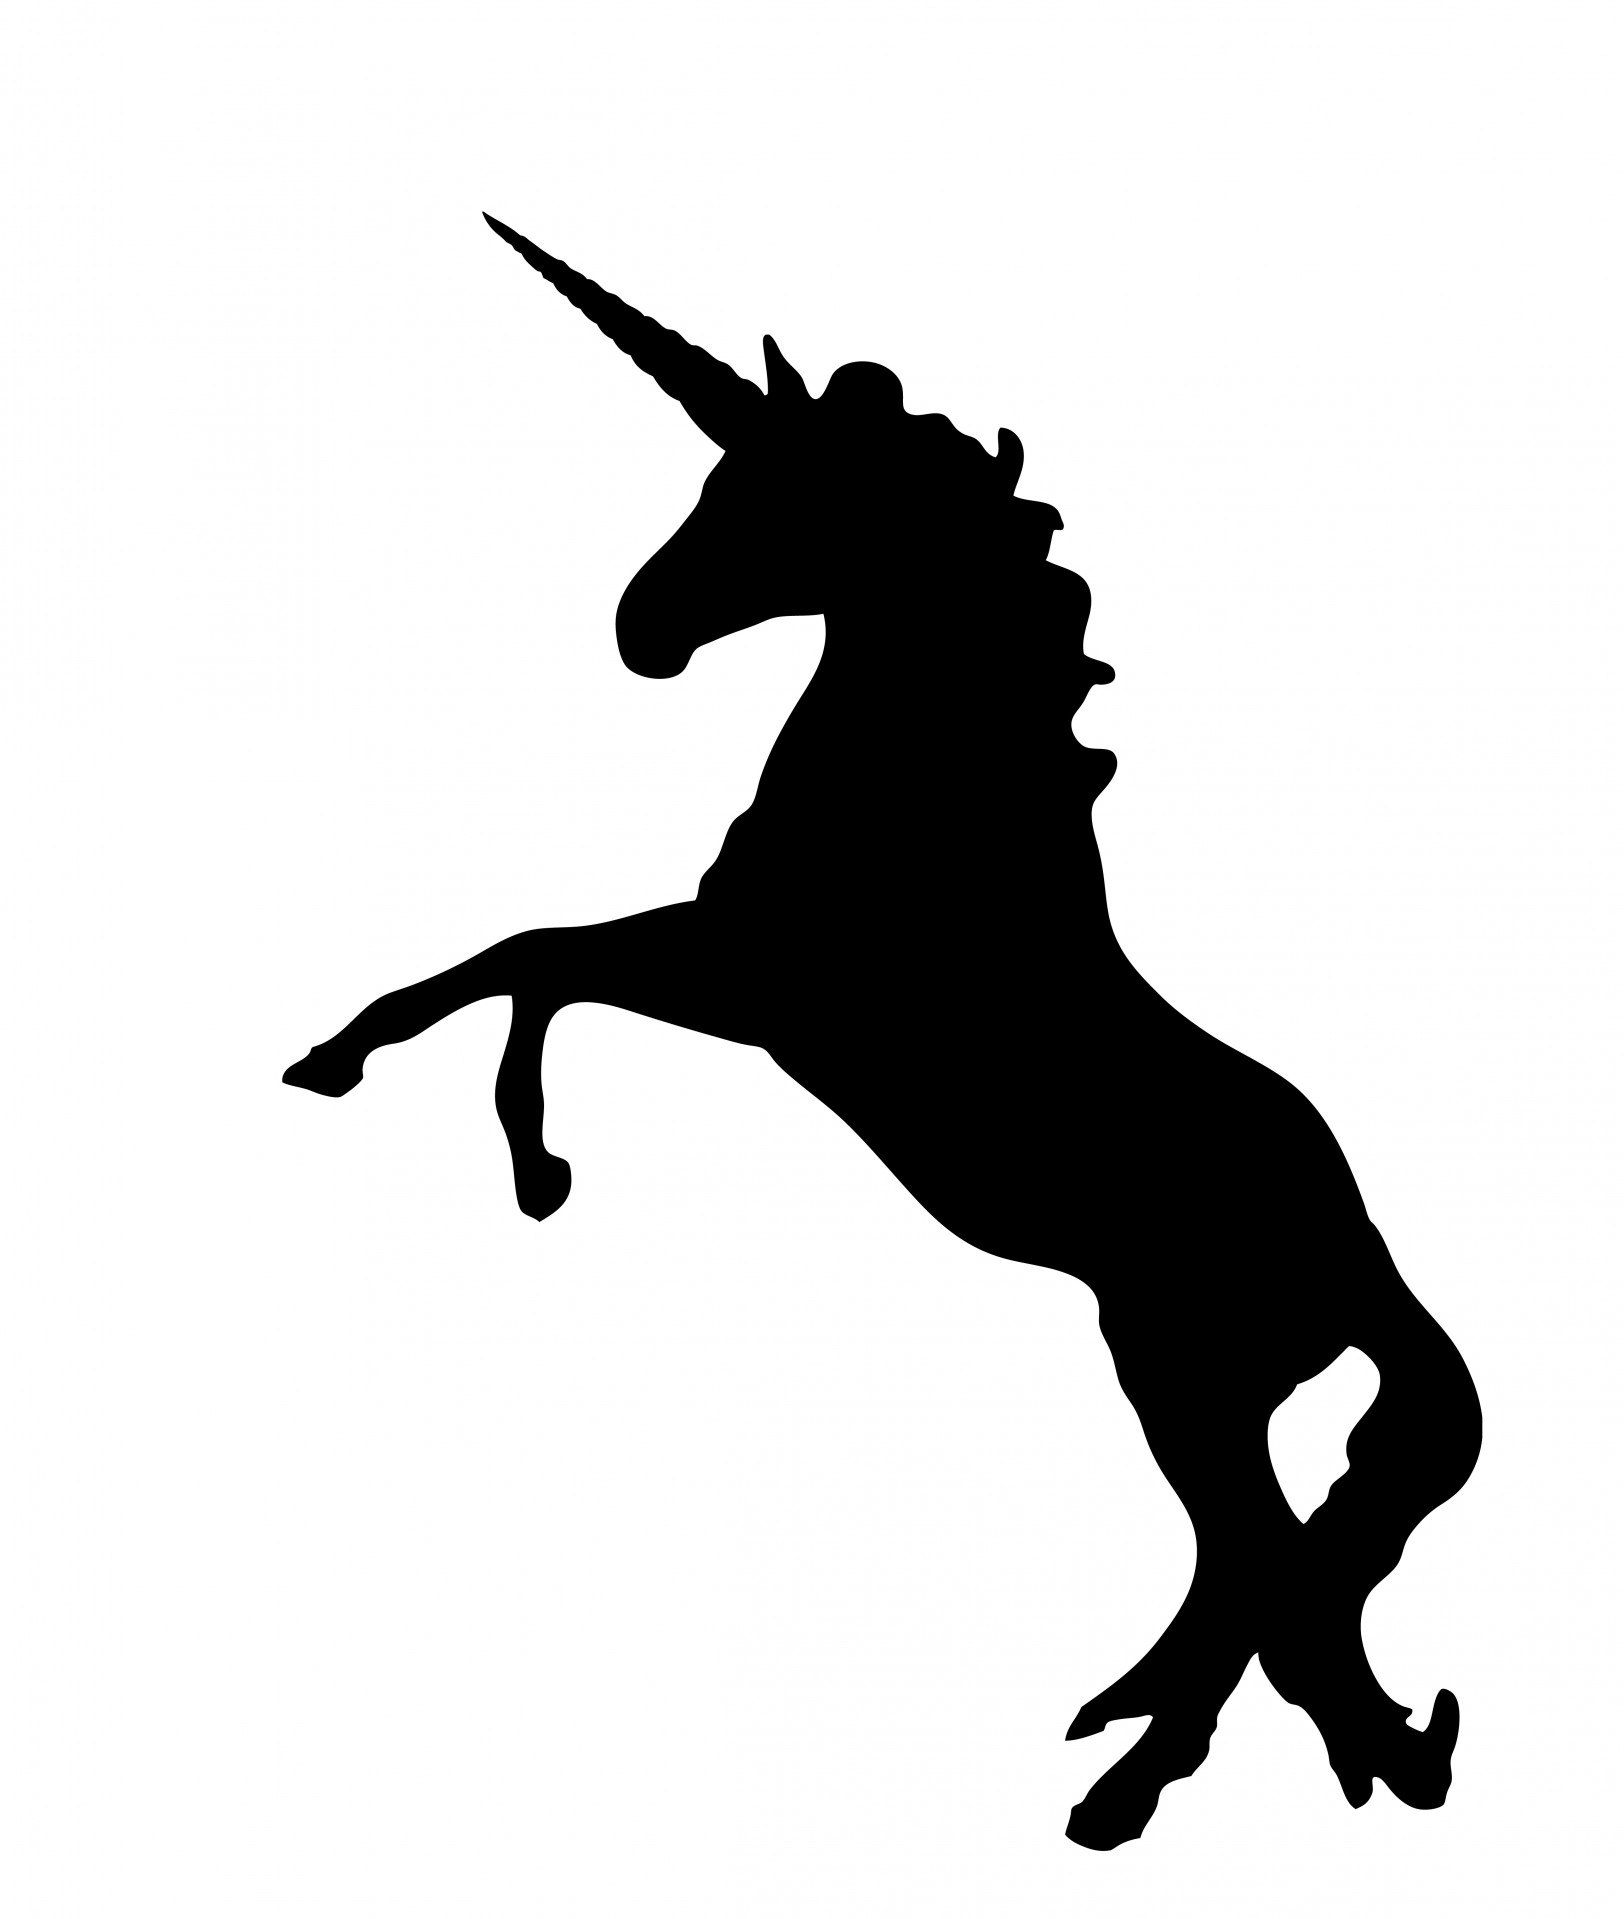 Unicorn black silhouette clipart free stock photo public domain